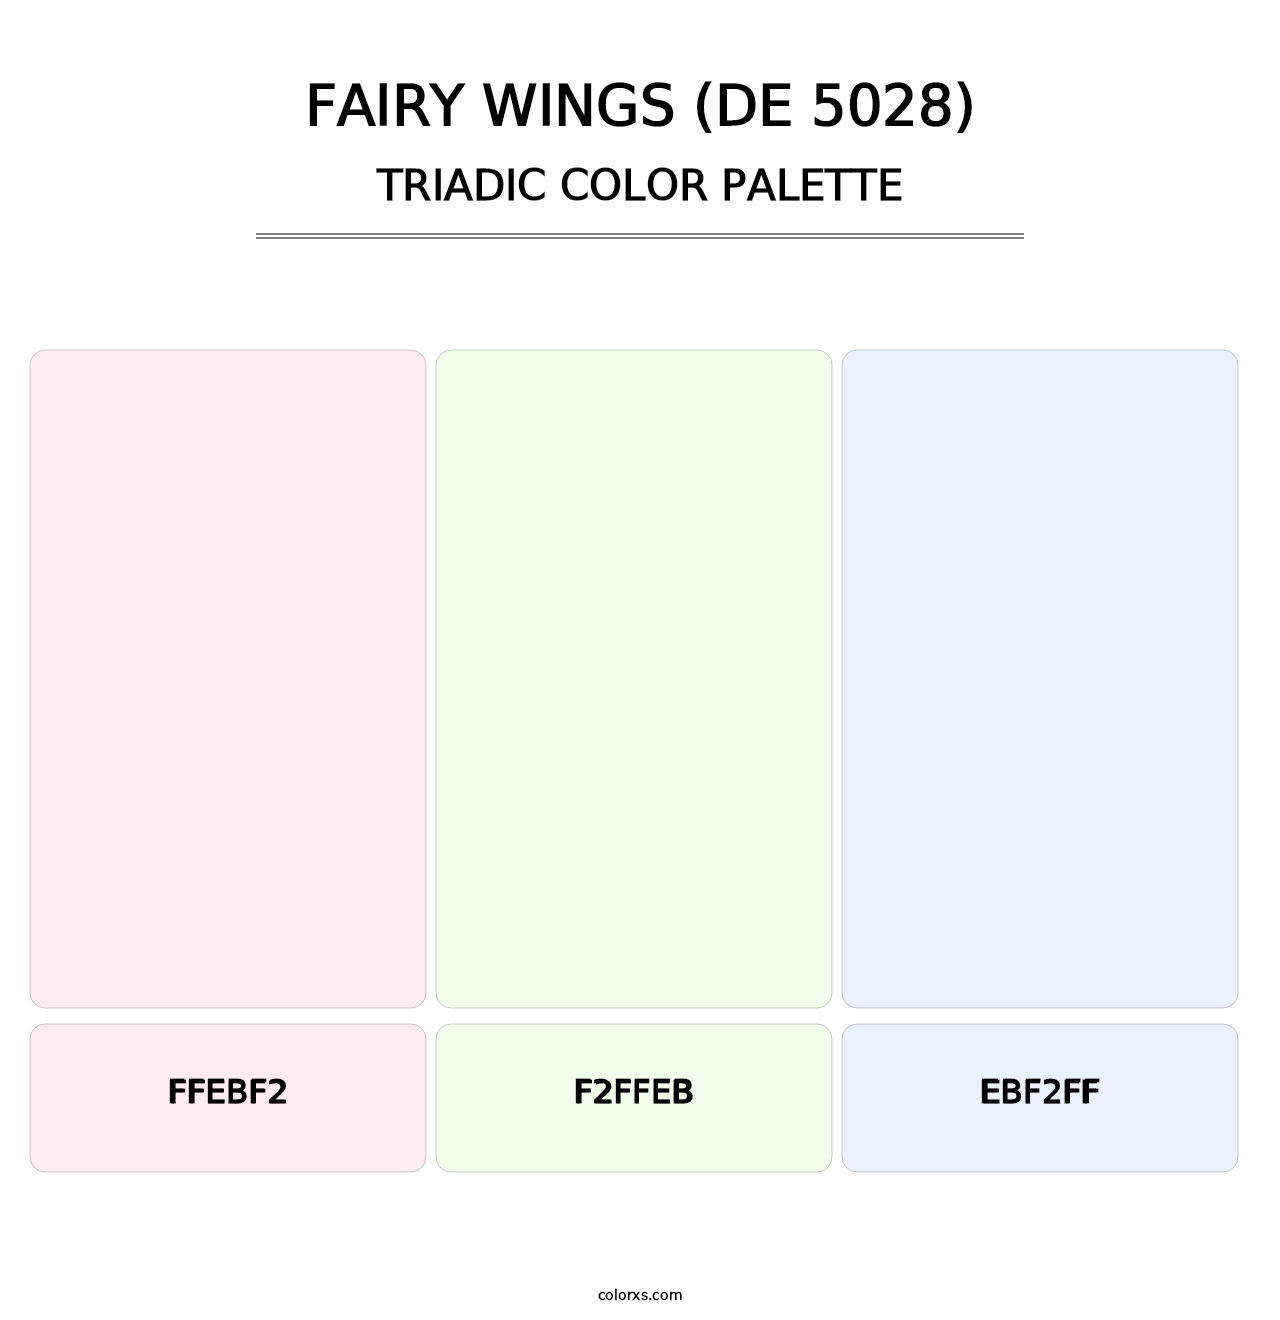 Fairy Wings (DE 5028) - Triadic Color Palette